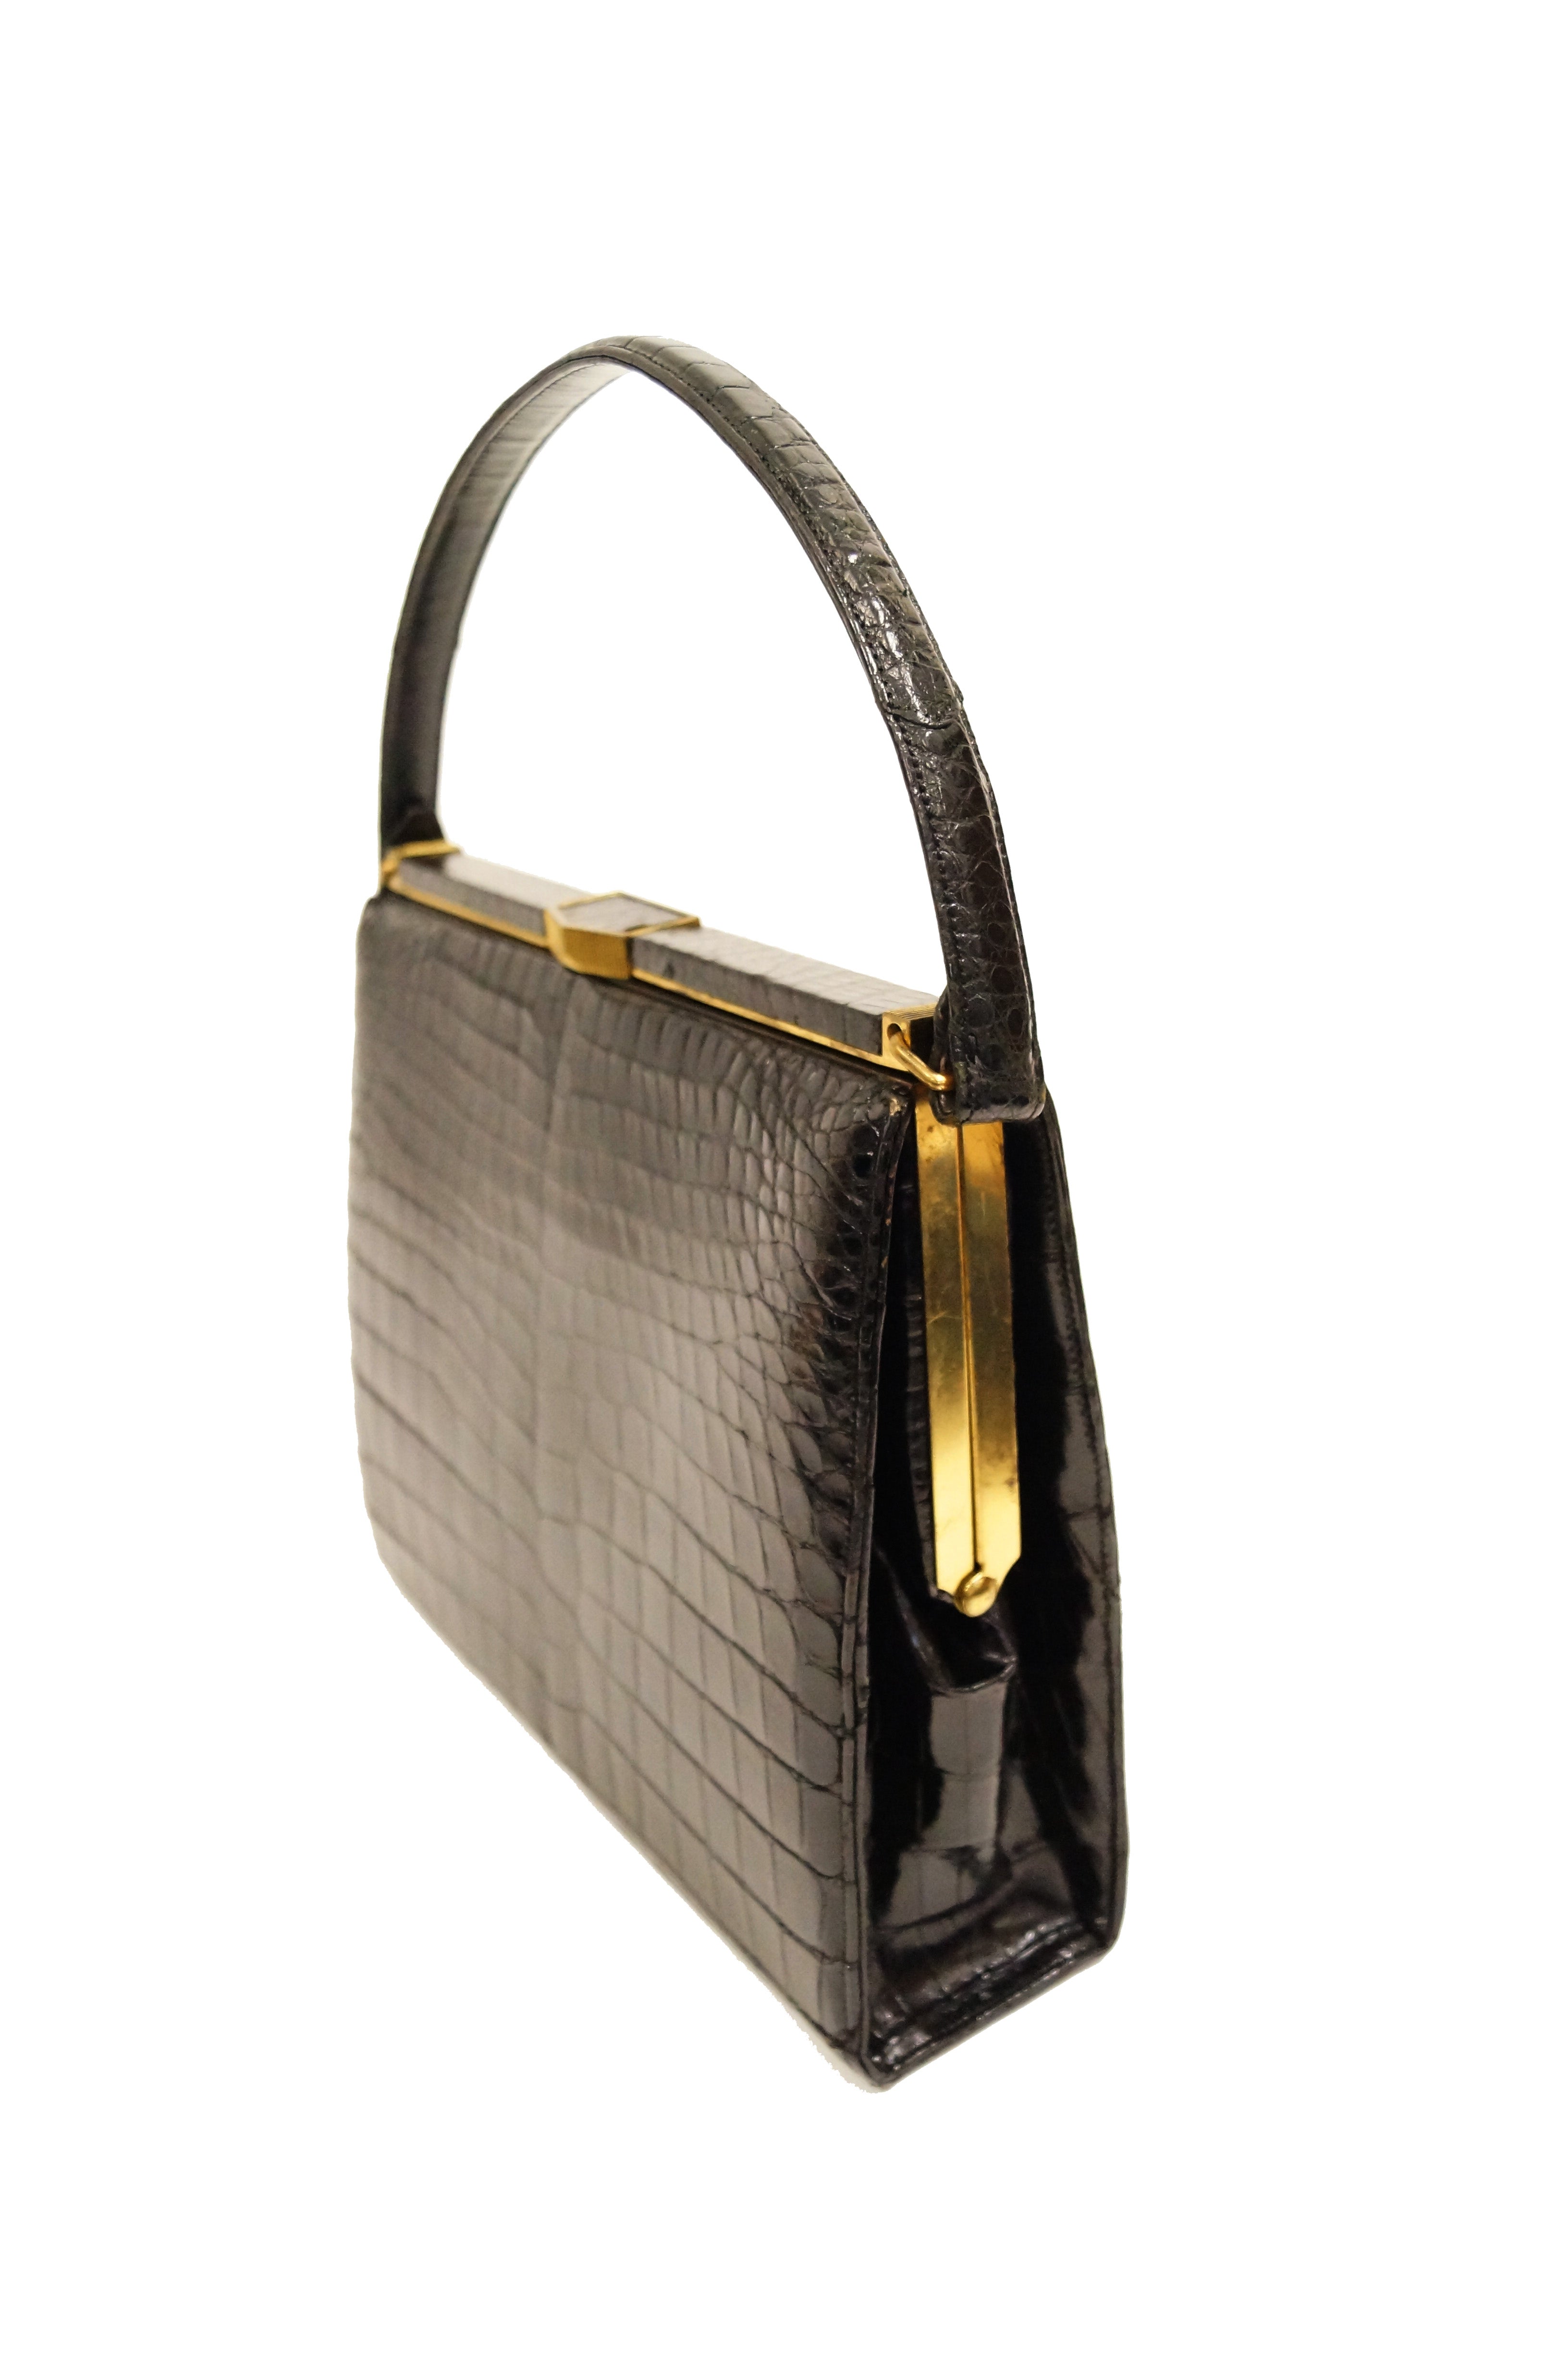 Handbag/clutch Gold,50-70s,evening handbag,vintage,handbags